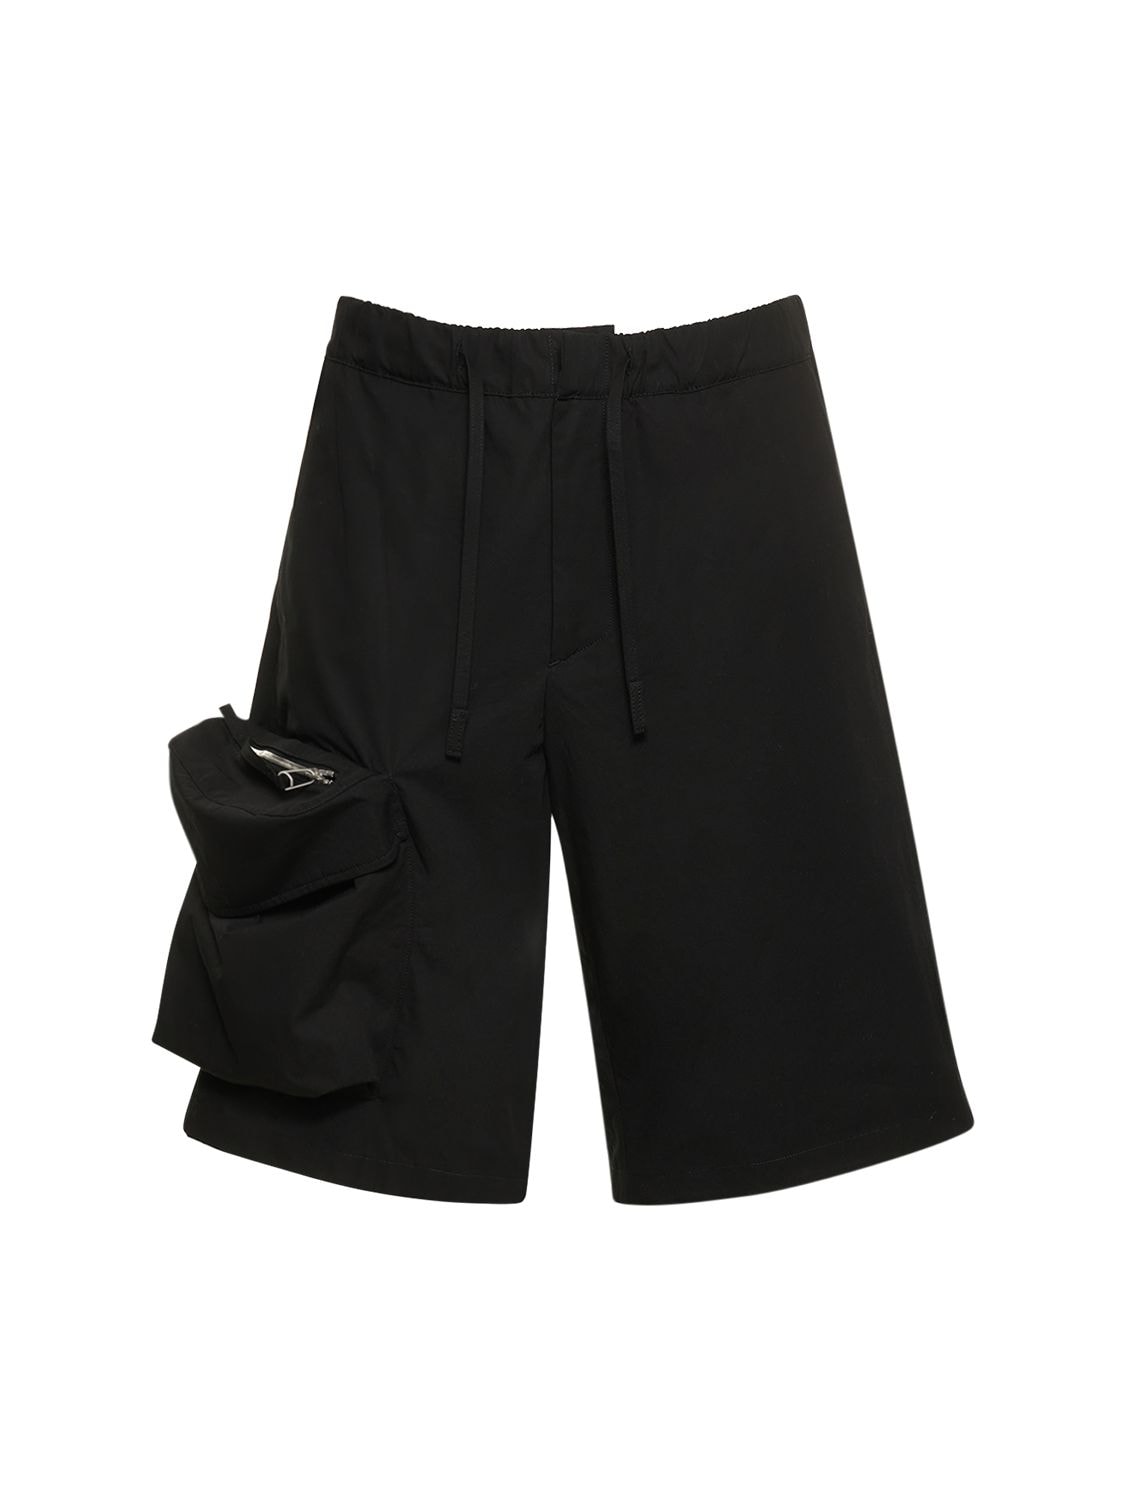 Cove Cargo Shorts – MEN > CLOTHING > SHORTS